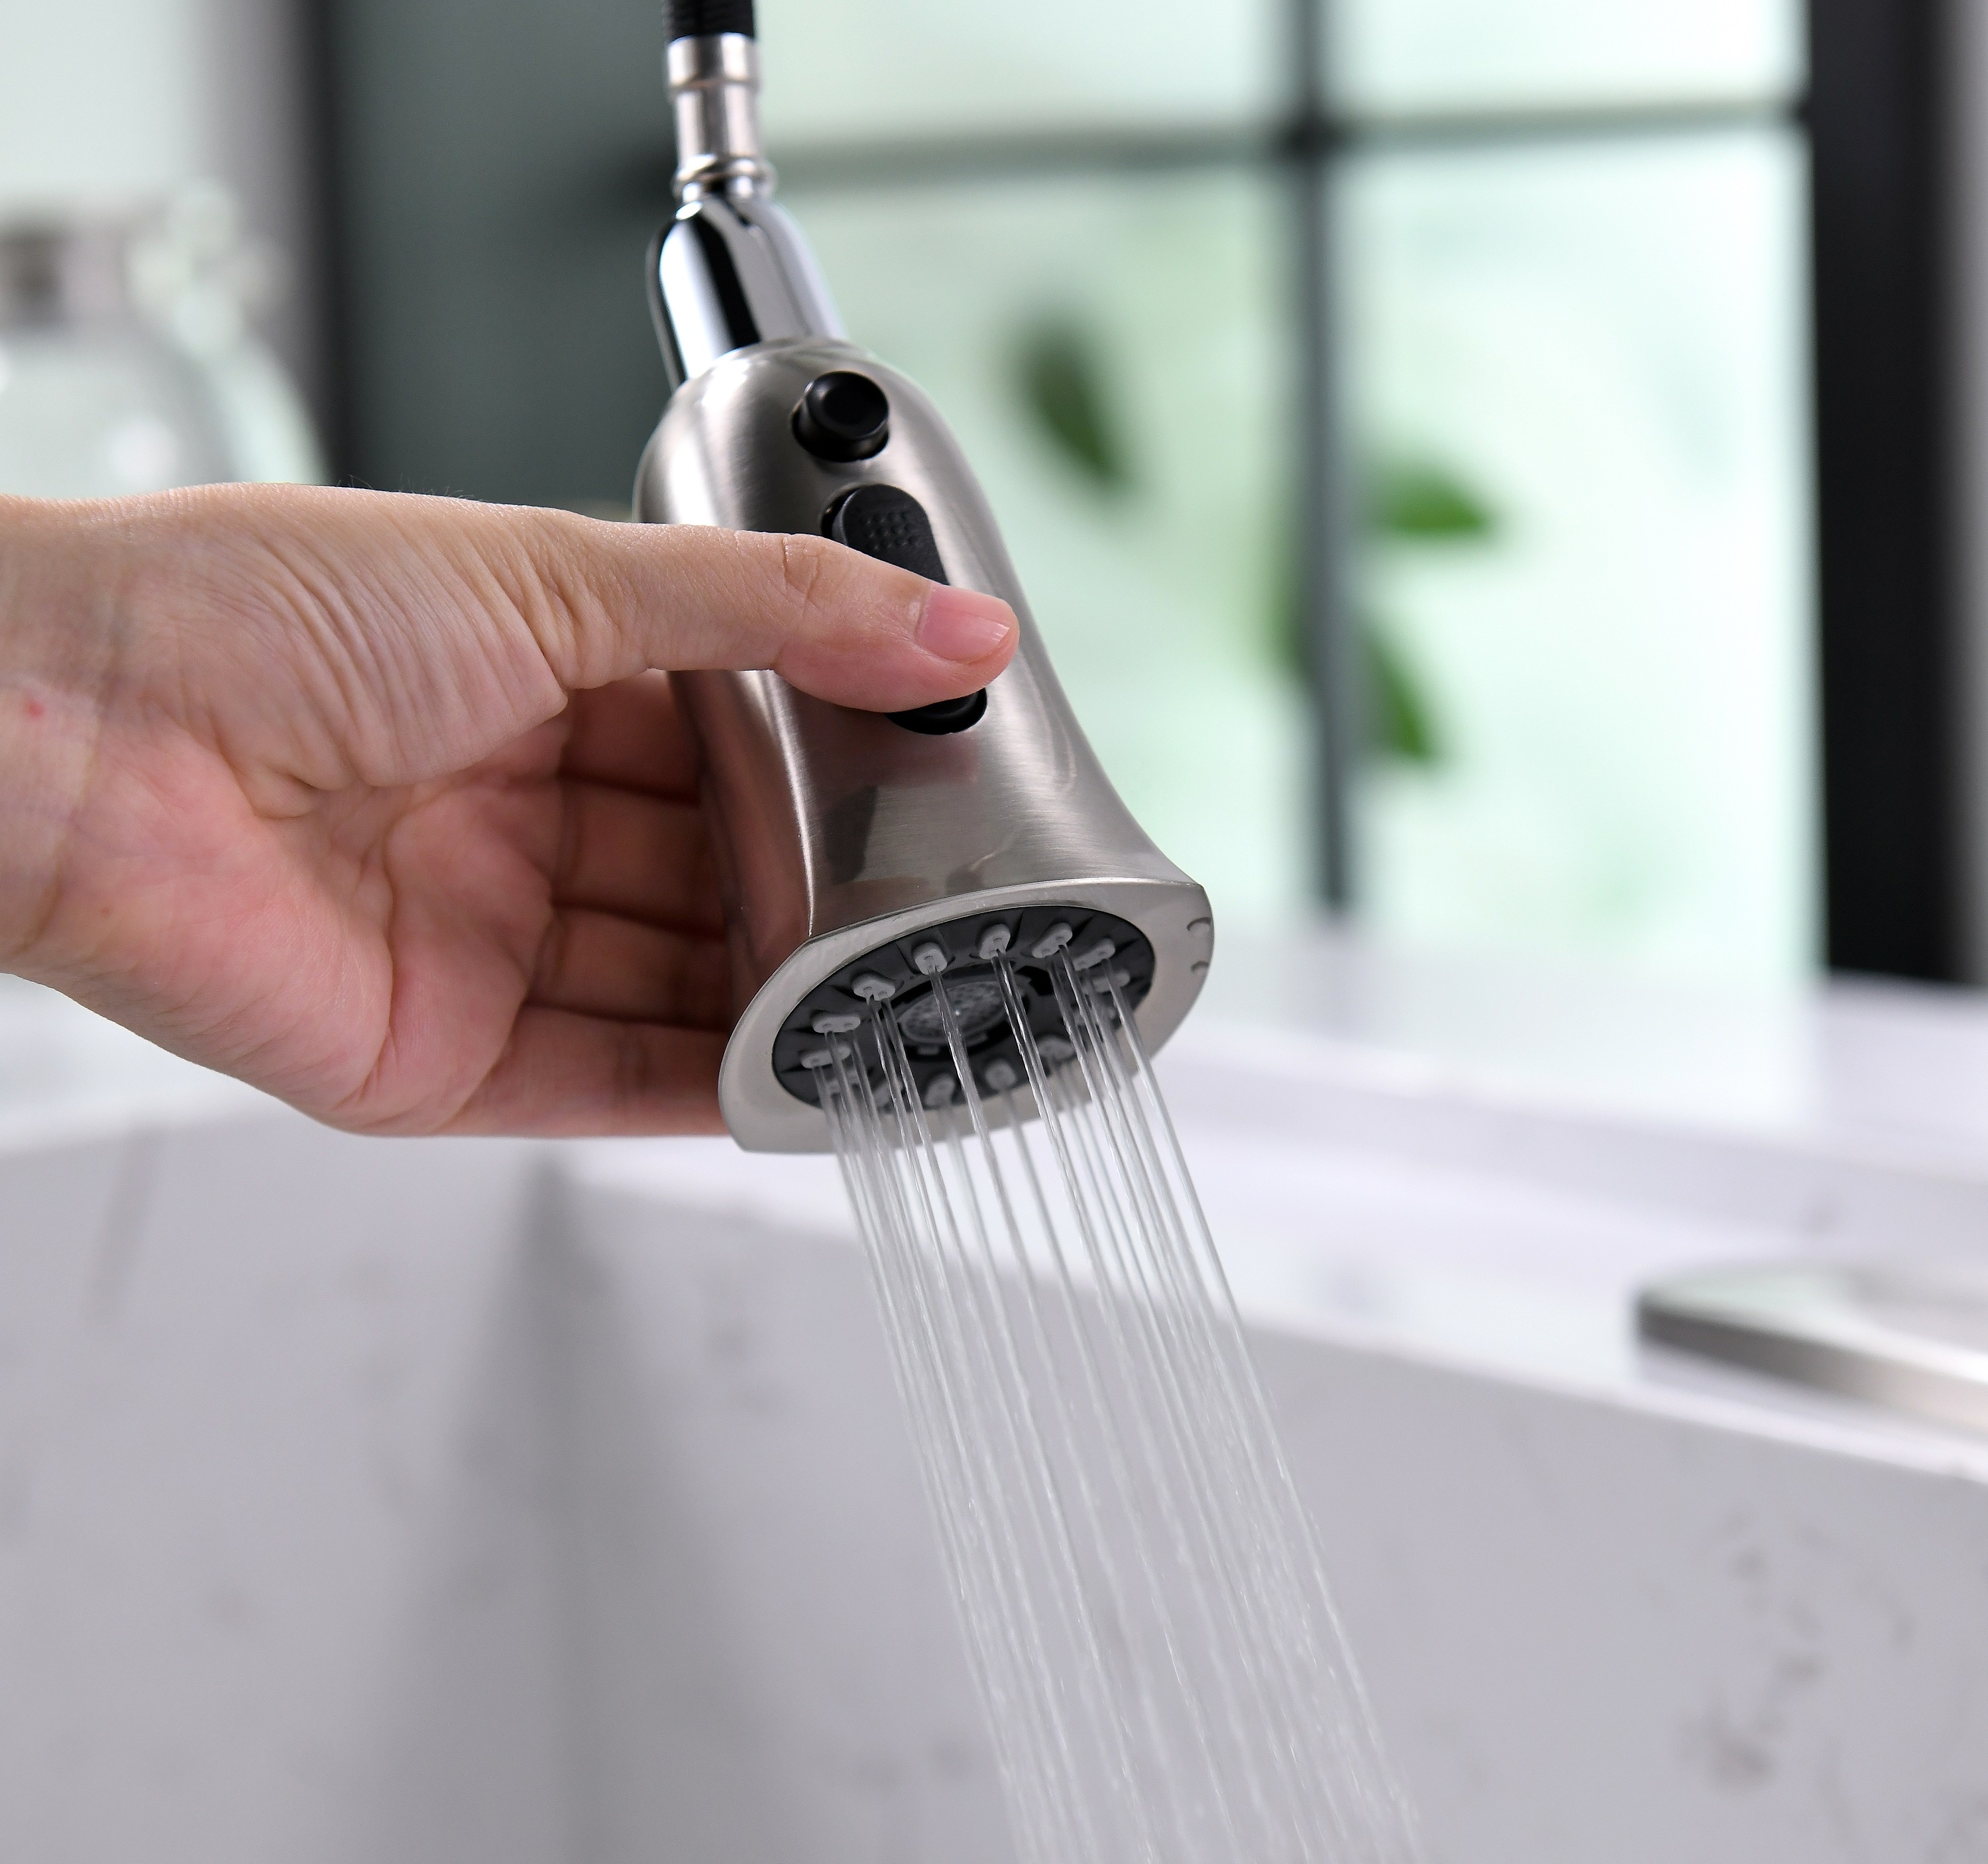 Wasserhahn mit Sensor 360 Grad Smart Touchless Küchenarmatur Wasserhahn Pull Down Smart Touch Küchenarmatur